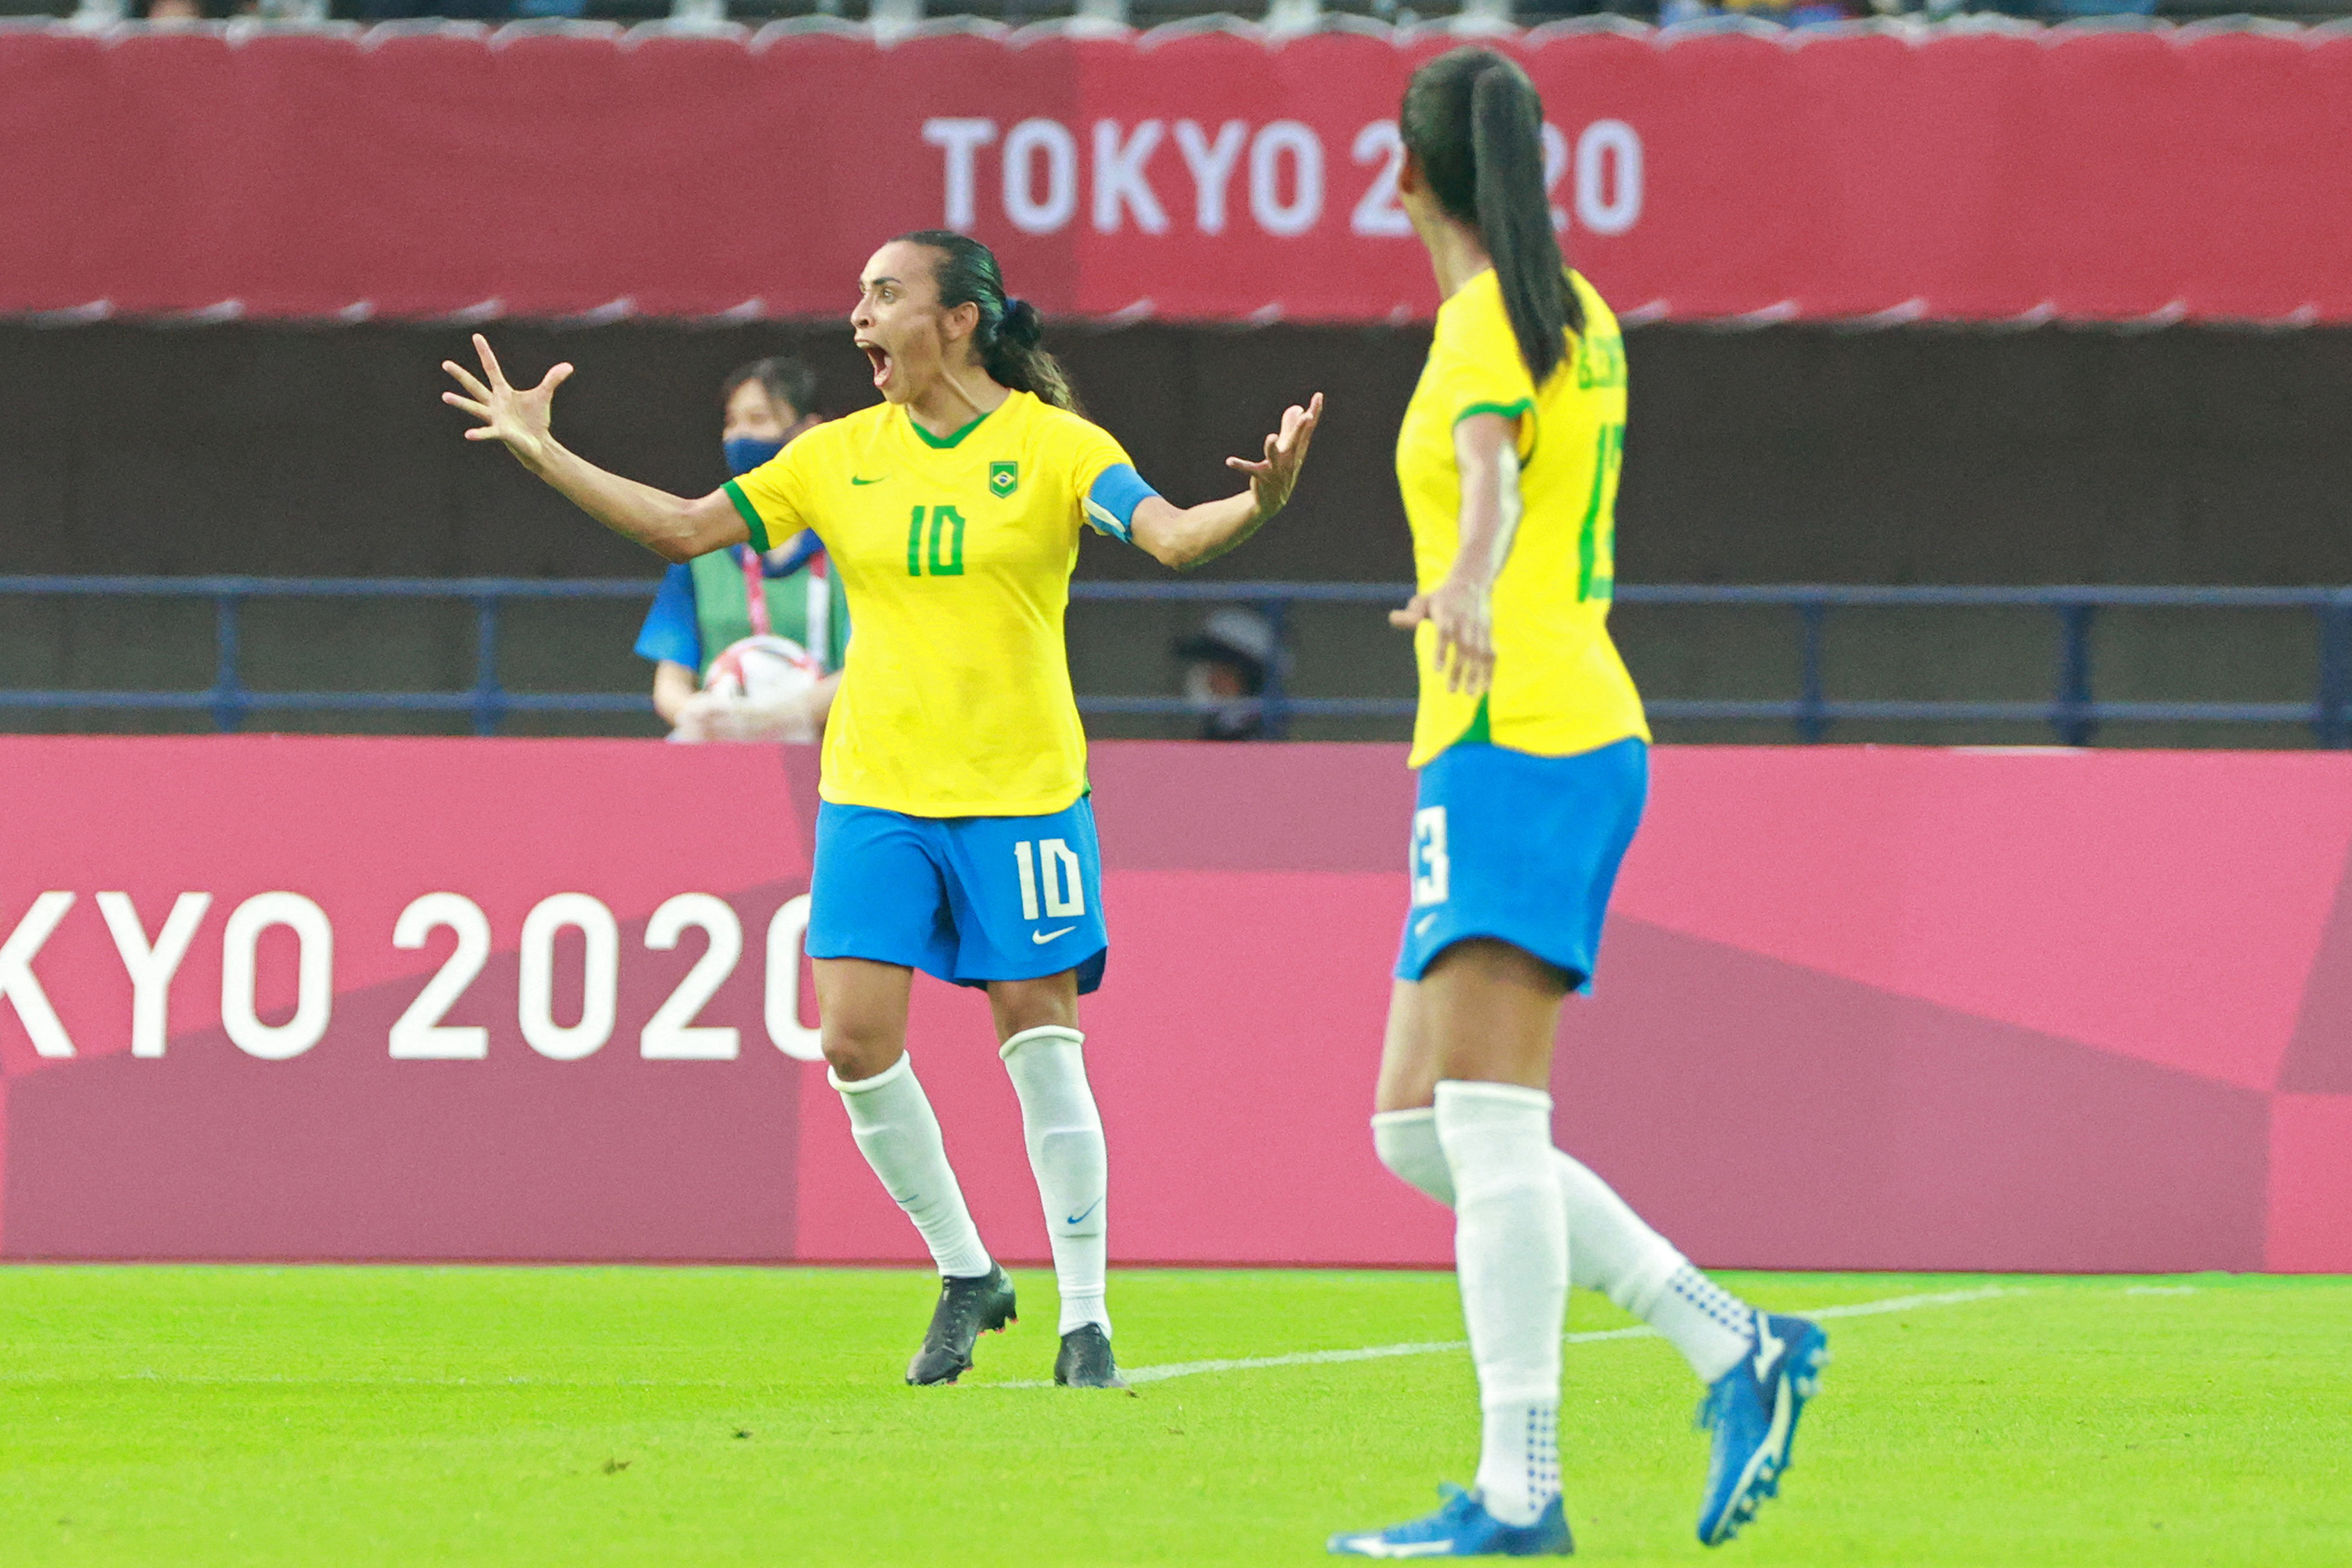 Brasil goleia a China na estreia do futebol feminino. Veja fotos - Fotos -  R7 Olimpíadas